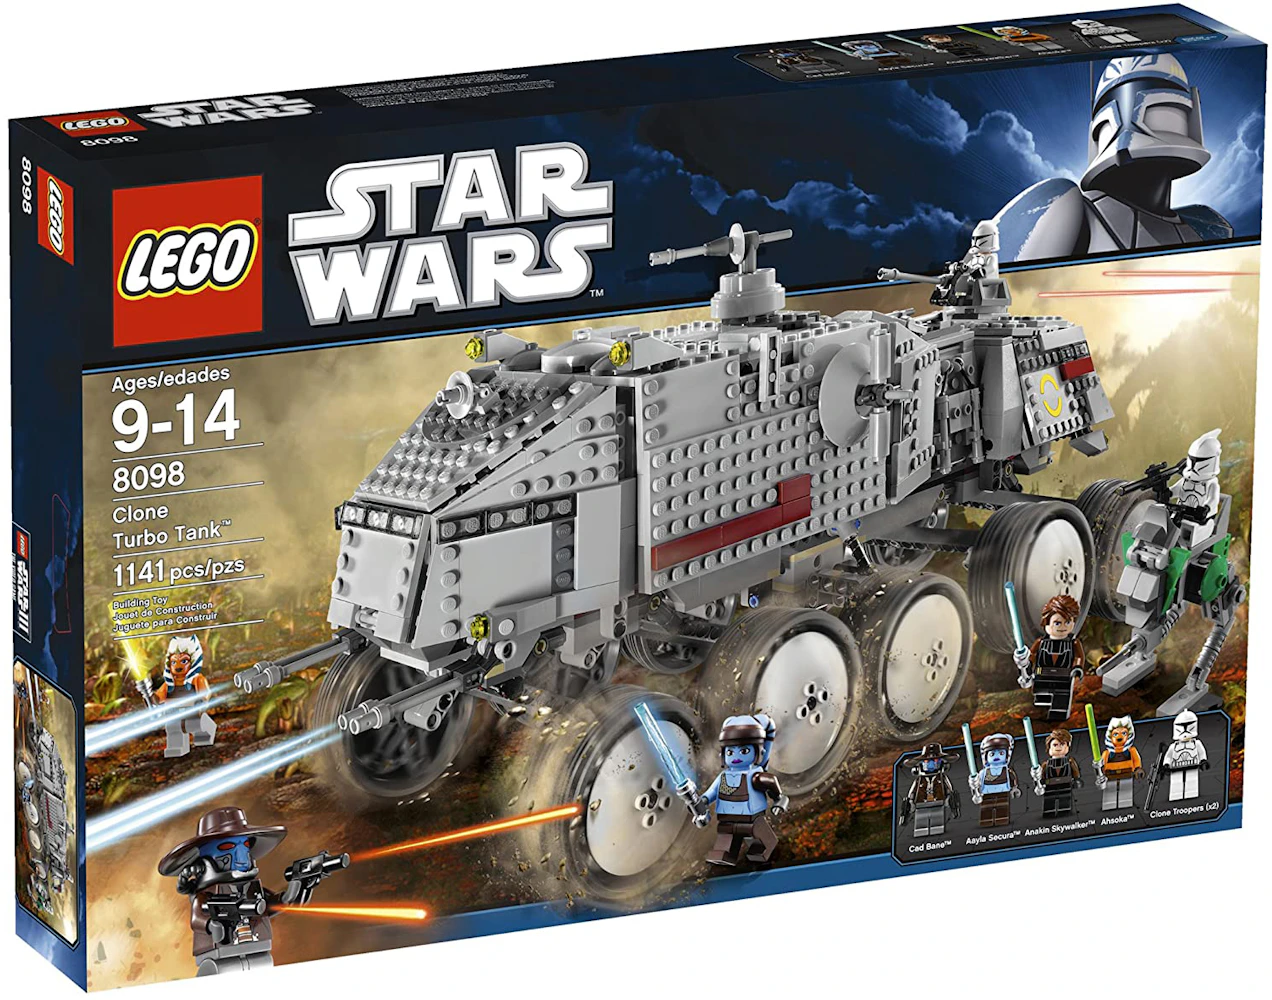 LEGO Star Wars Clone Trubo Tank Set 8098 - US